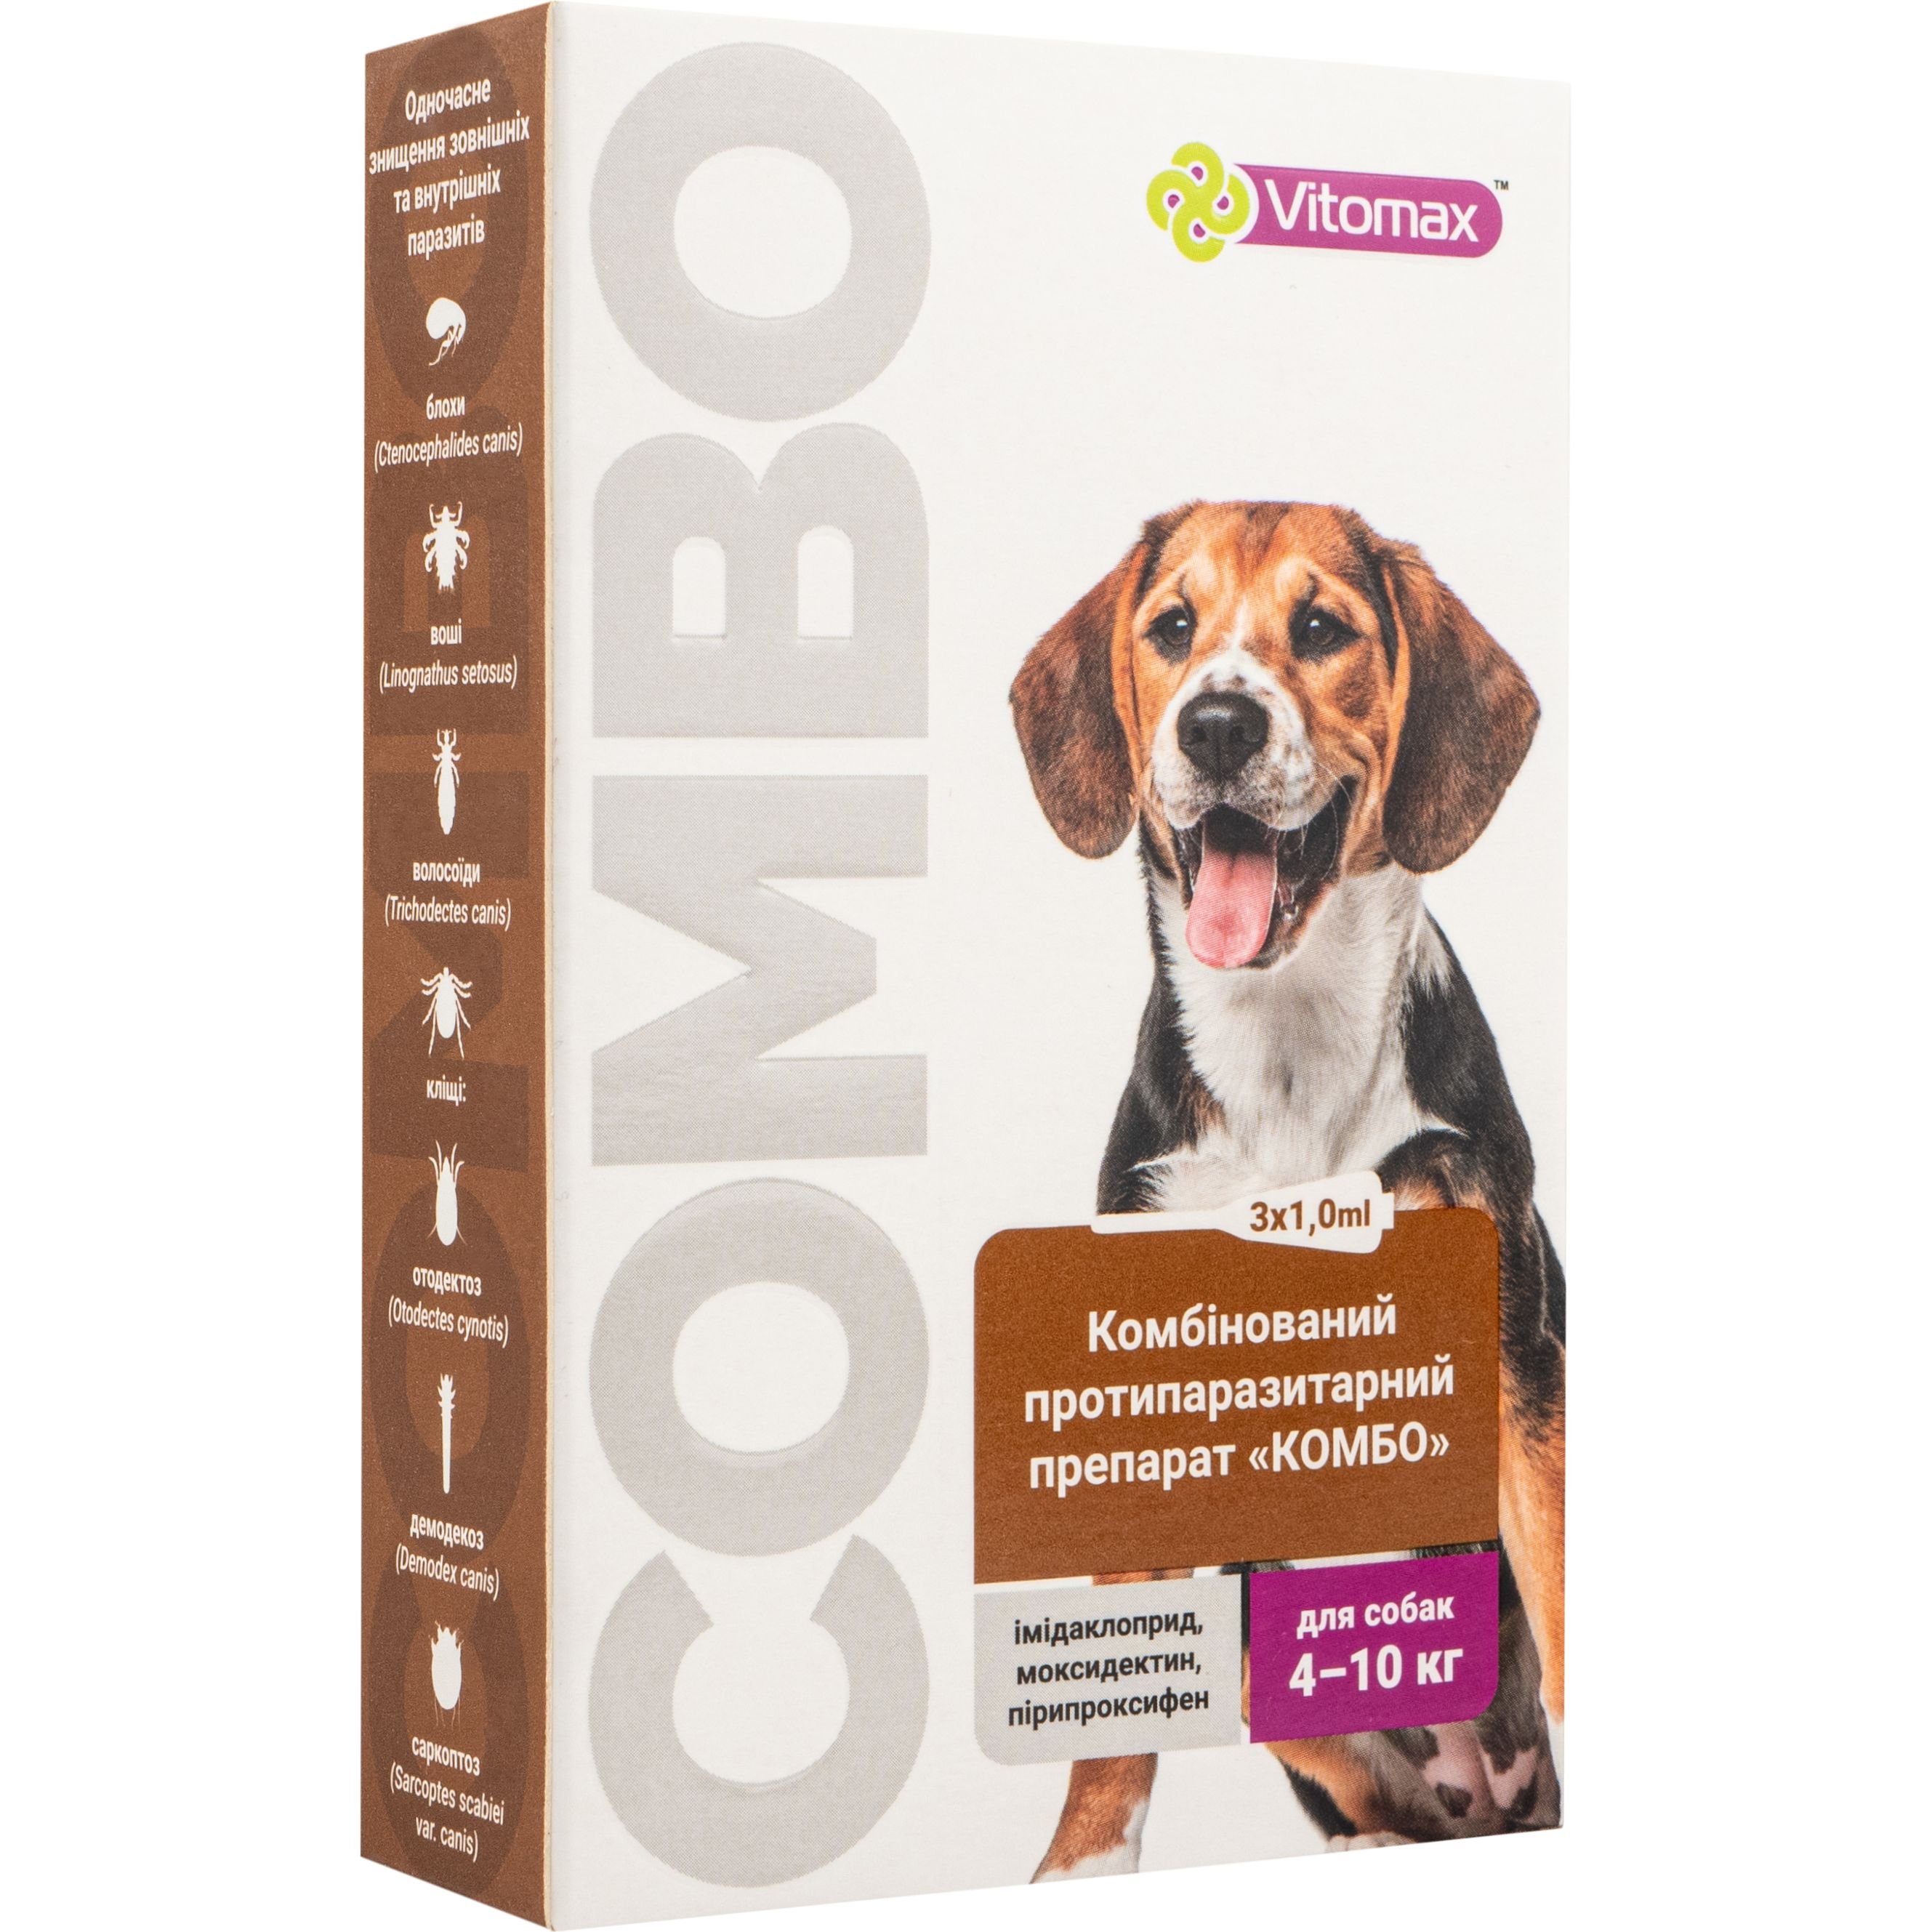 Краплі Vitomax комбо для собак 4 -10 кг, 1.0 мл, 3 шт. - фото 1